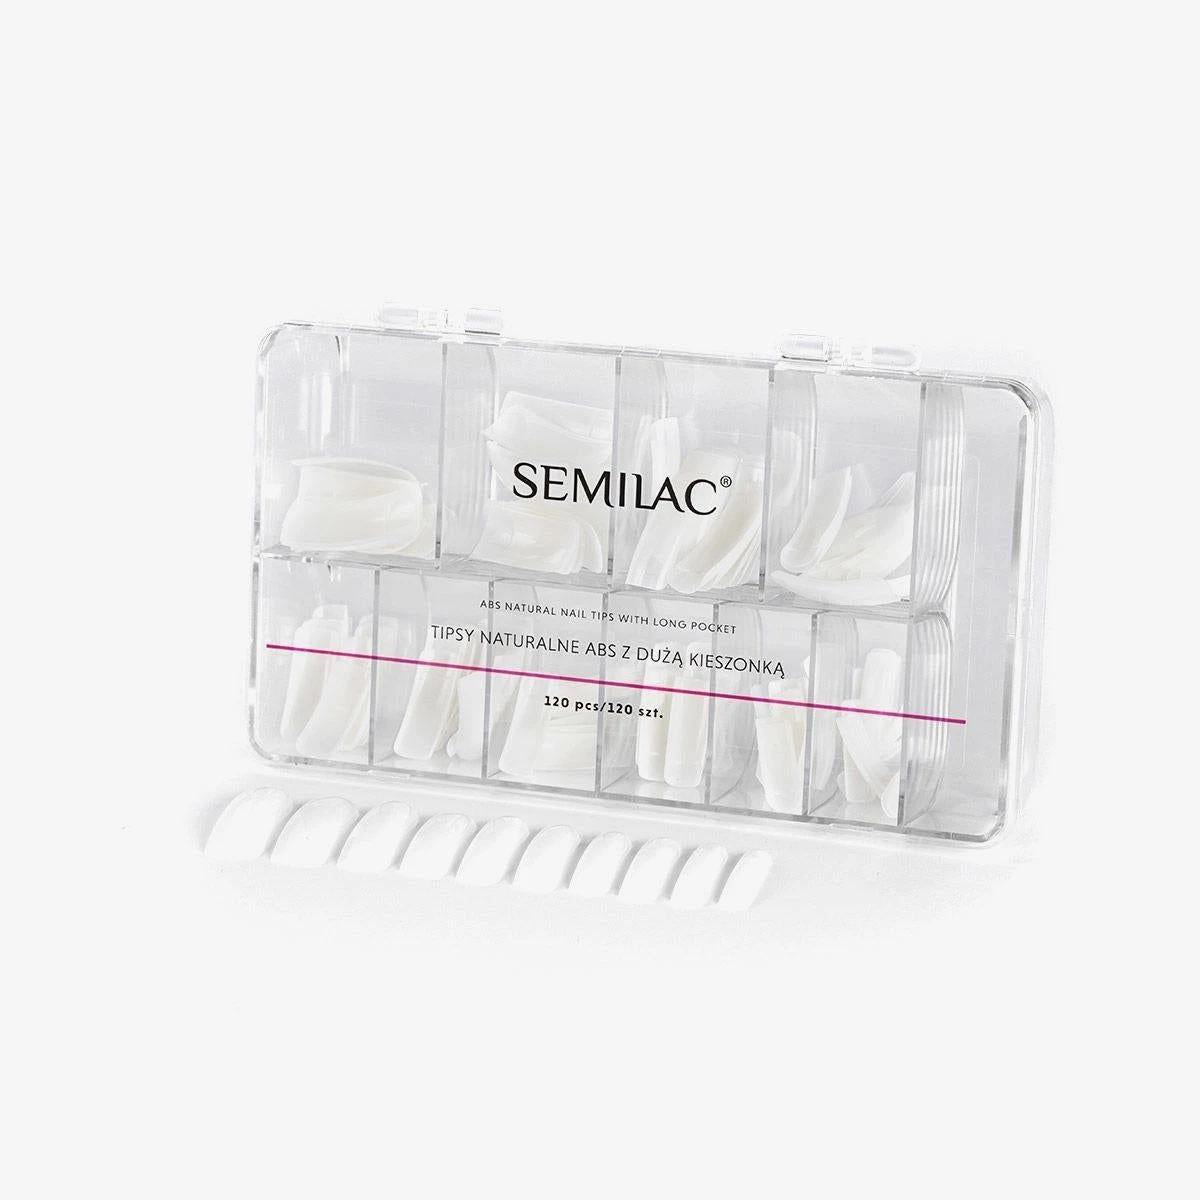 Semilac Natural Tips 120 pcs. With a Long Pocket - Semilac UK